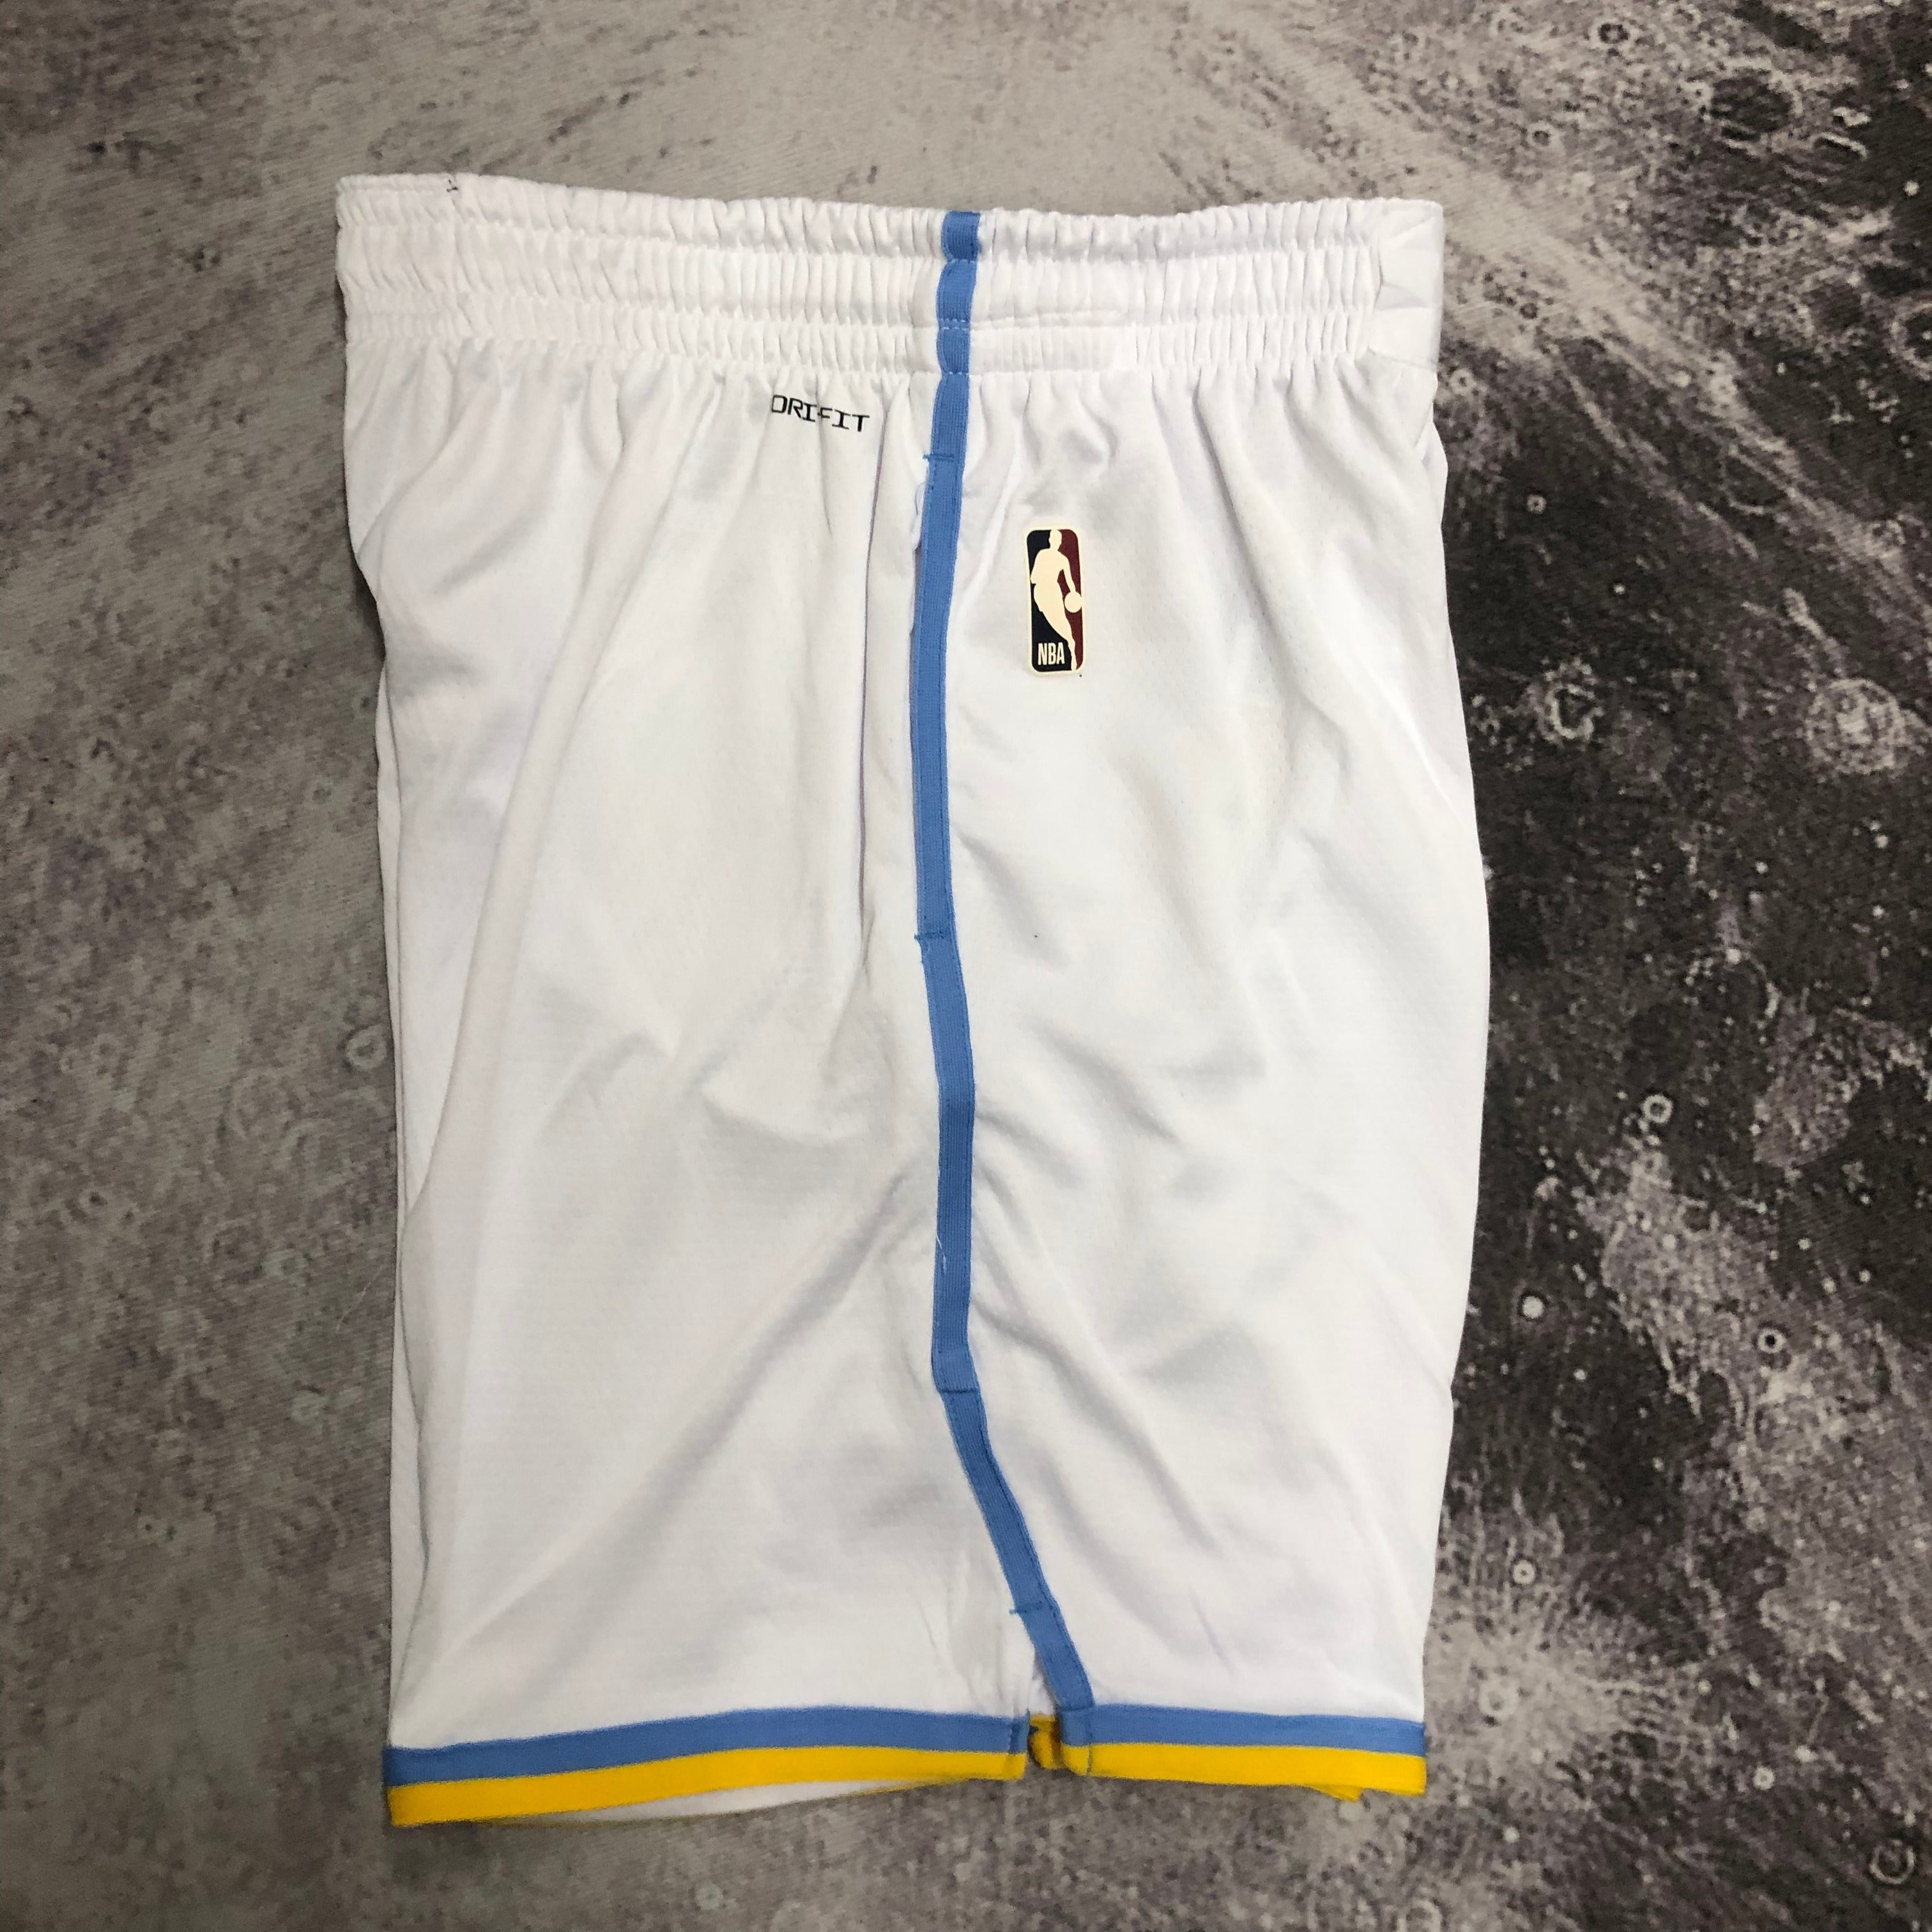 Lakers retro balls Shorts